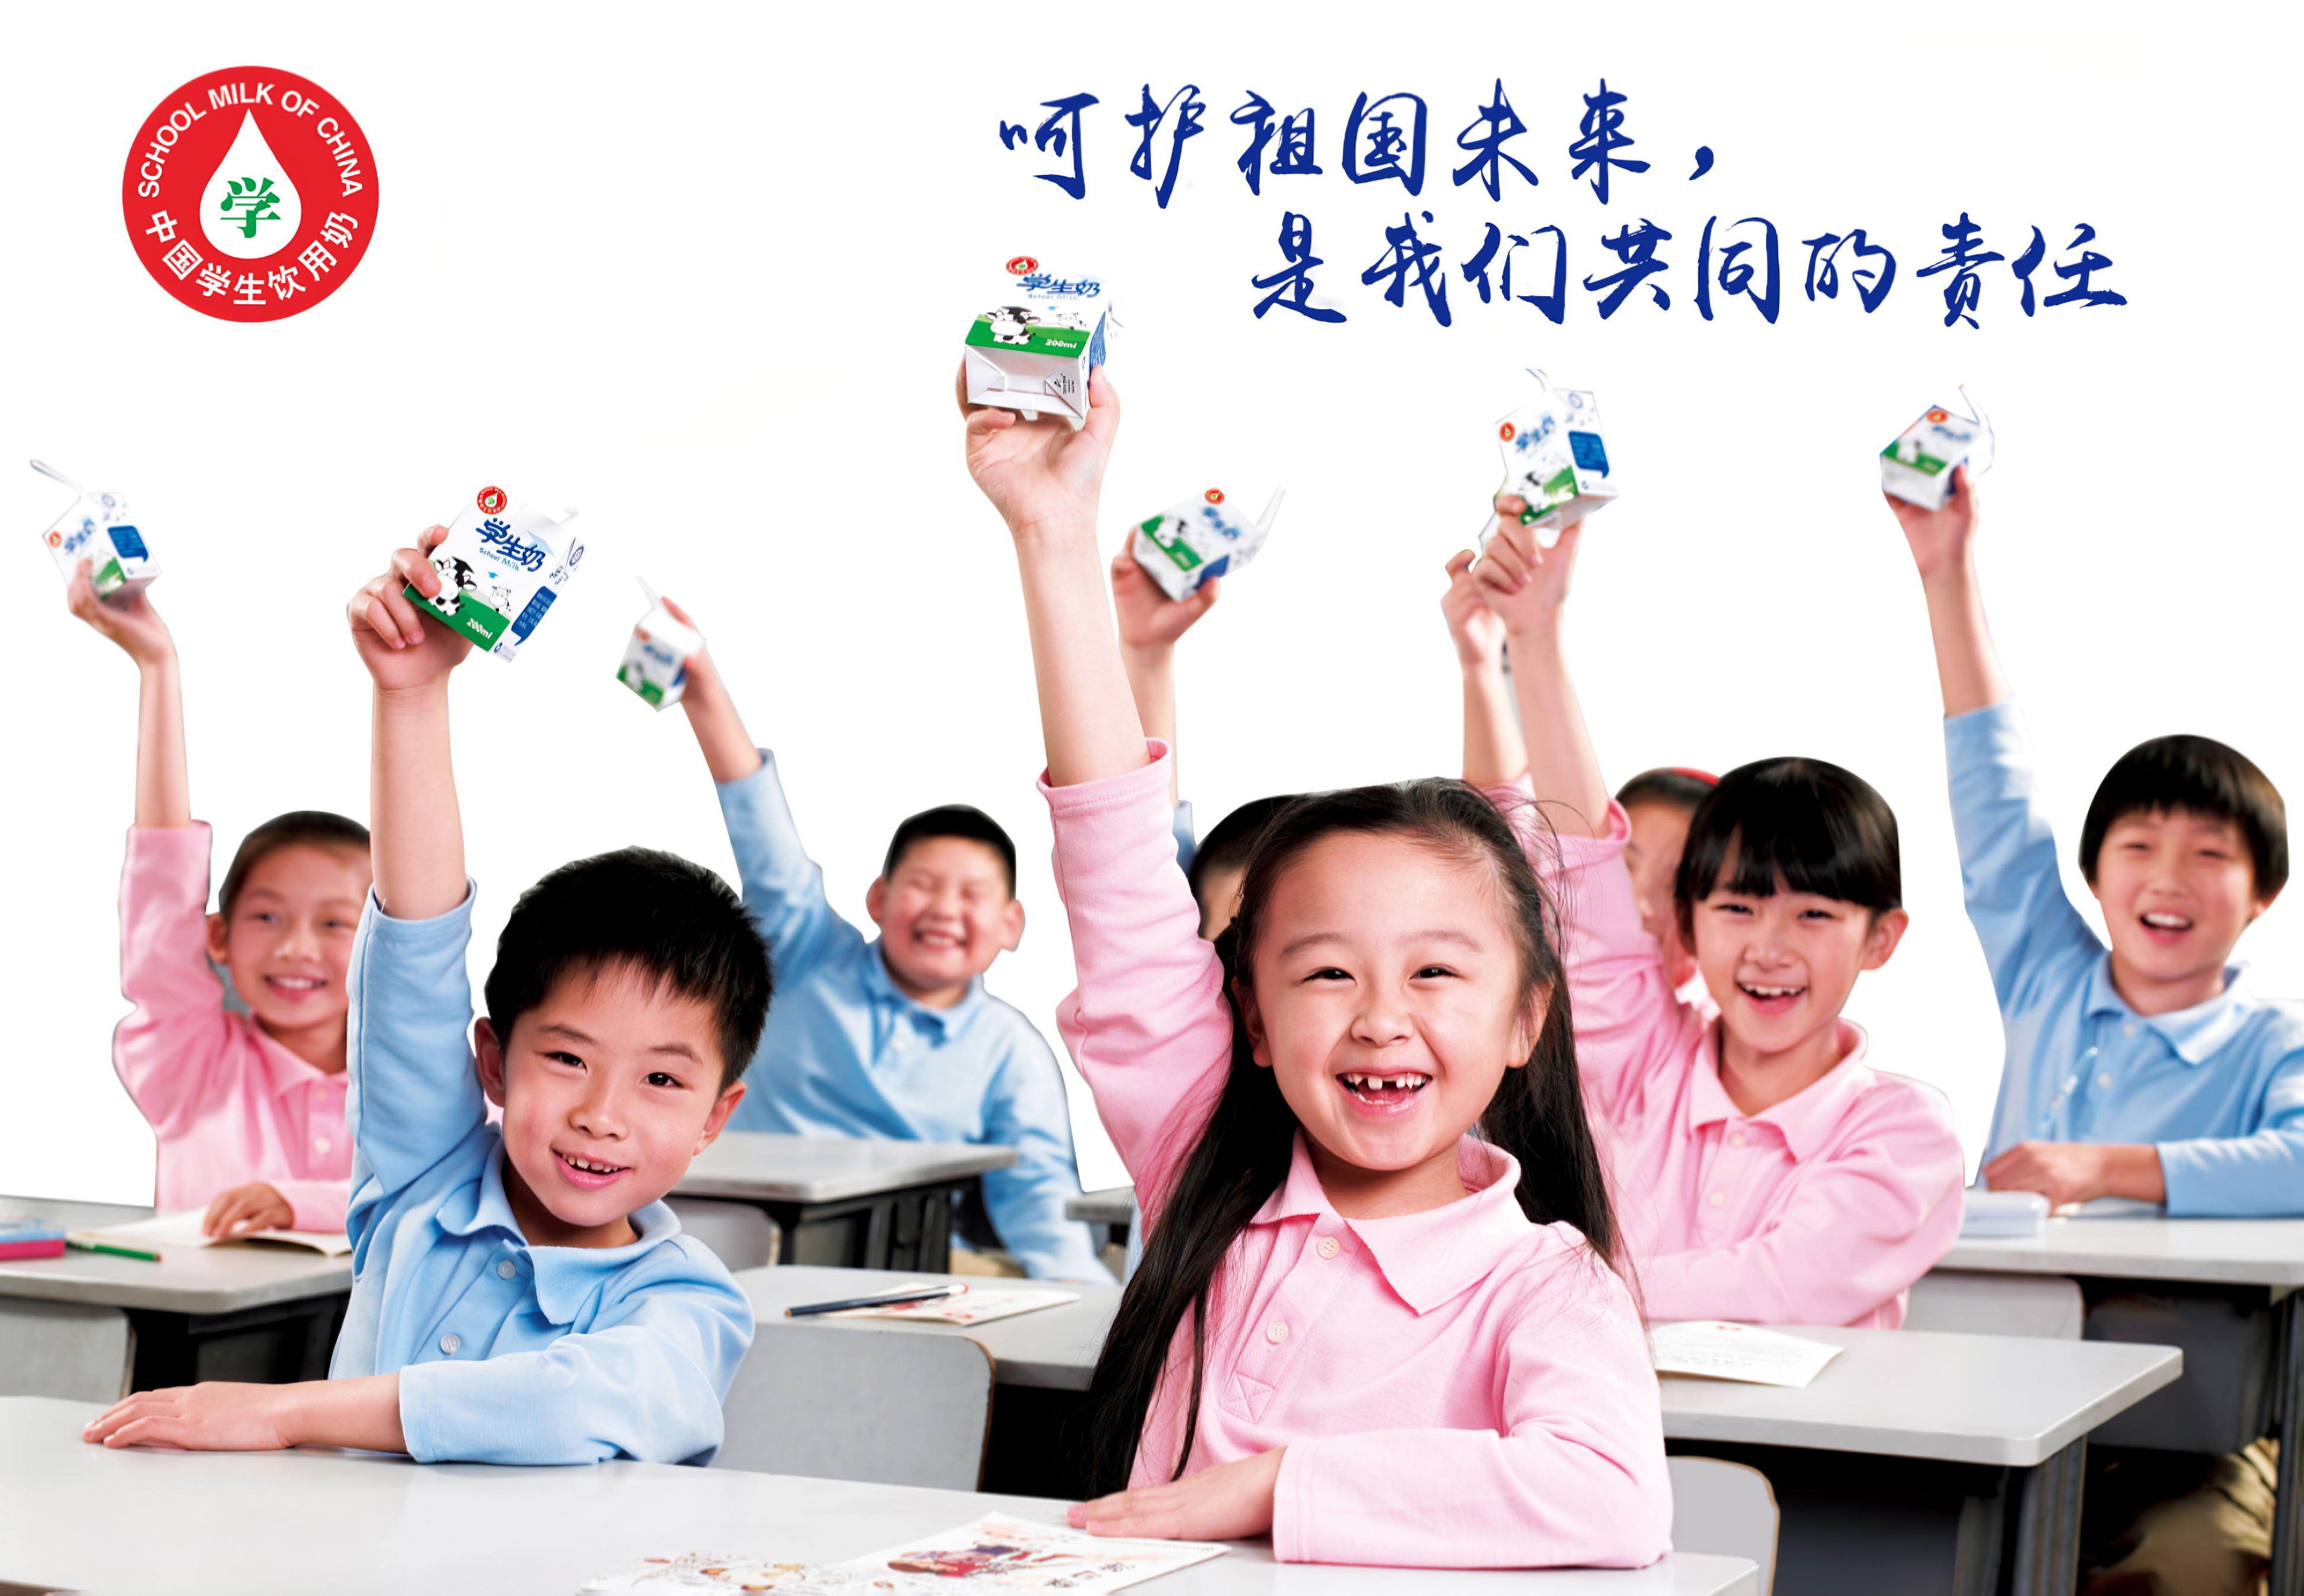 湖北省教育厅发文：倡导每日上下午科学饮奶 向高中教育阶段延伸